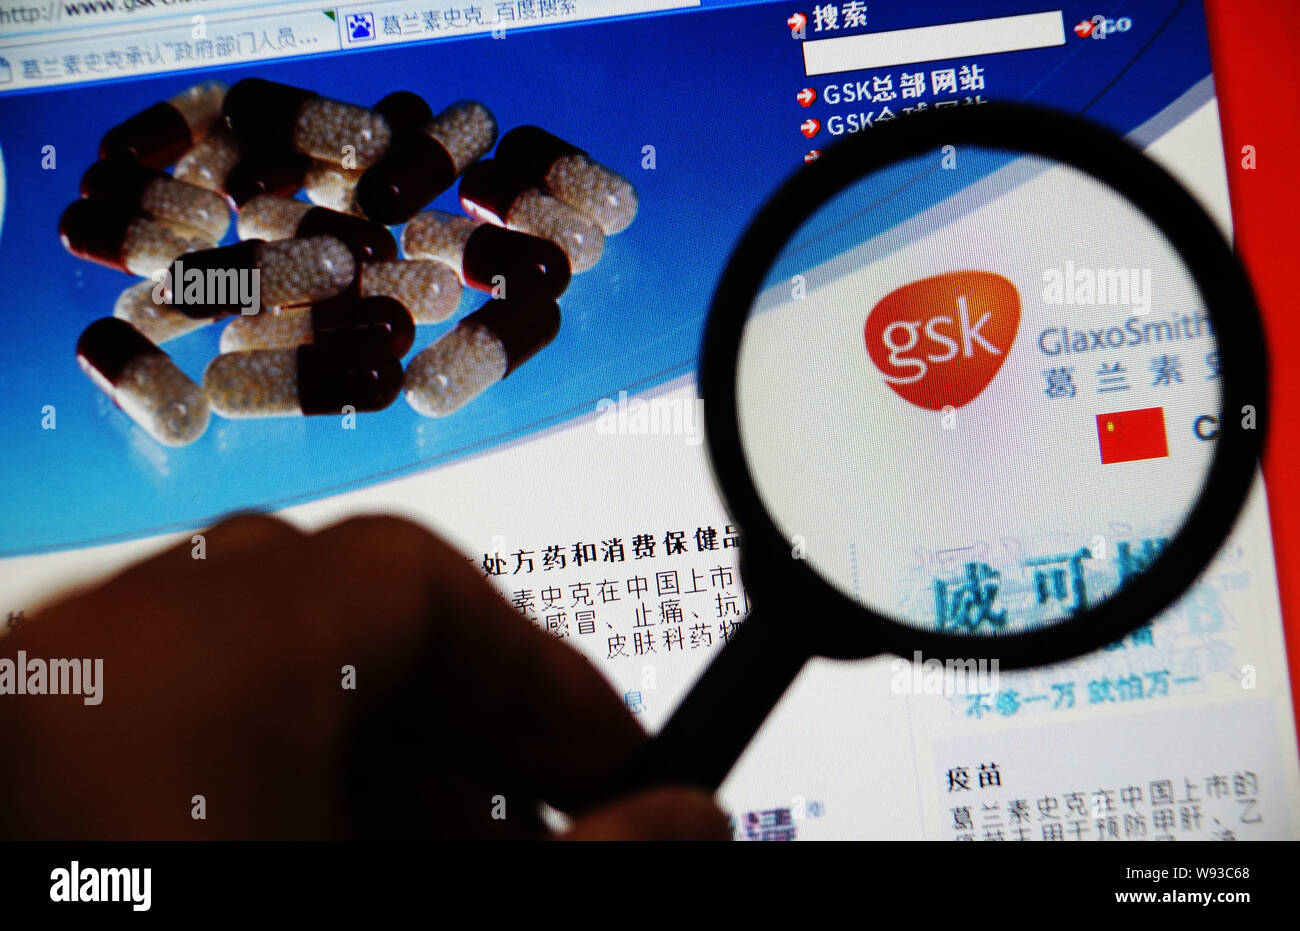 Un site web chinois de la bouilloire GlaxoSmithKline (GSK) à Tianjin, Chine, 1 juillet 2013. Chines haut Agence de planification économique étudie les coûts un Banque D'Images